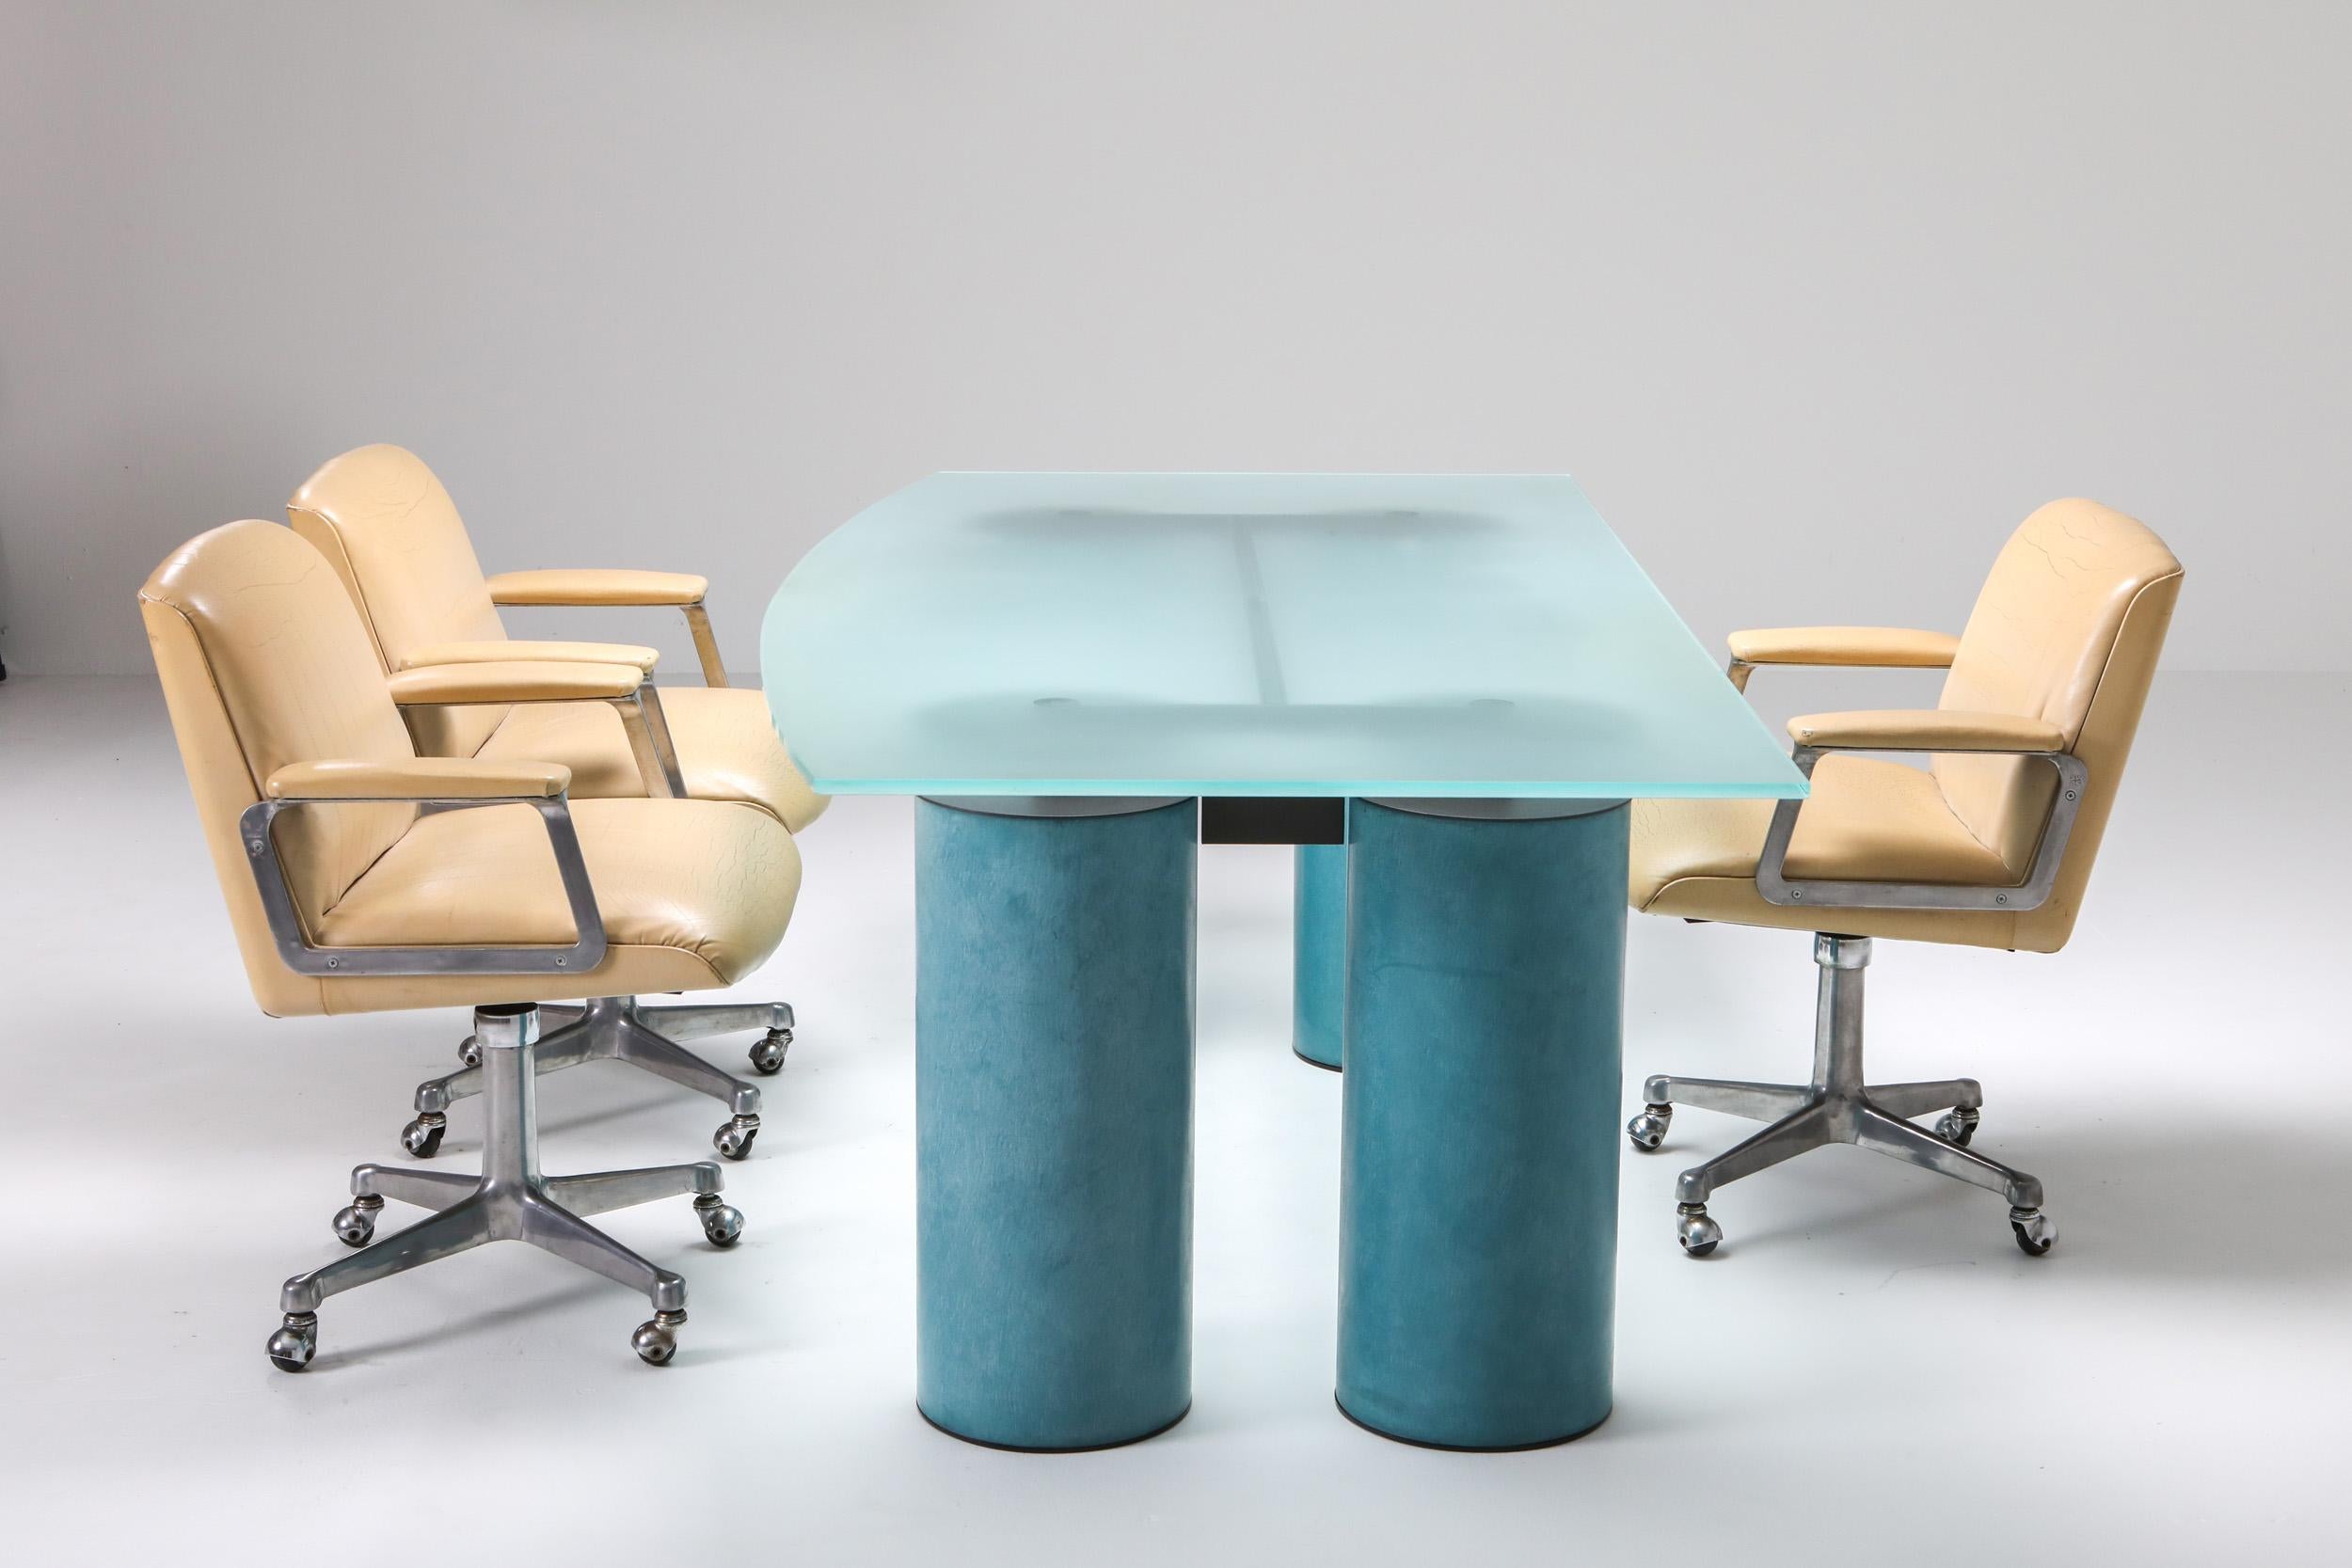 Massimo Vignelli 'Serenissimo' Table Desk for Acerbis 1